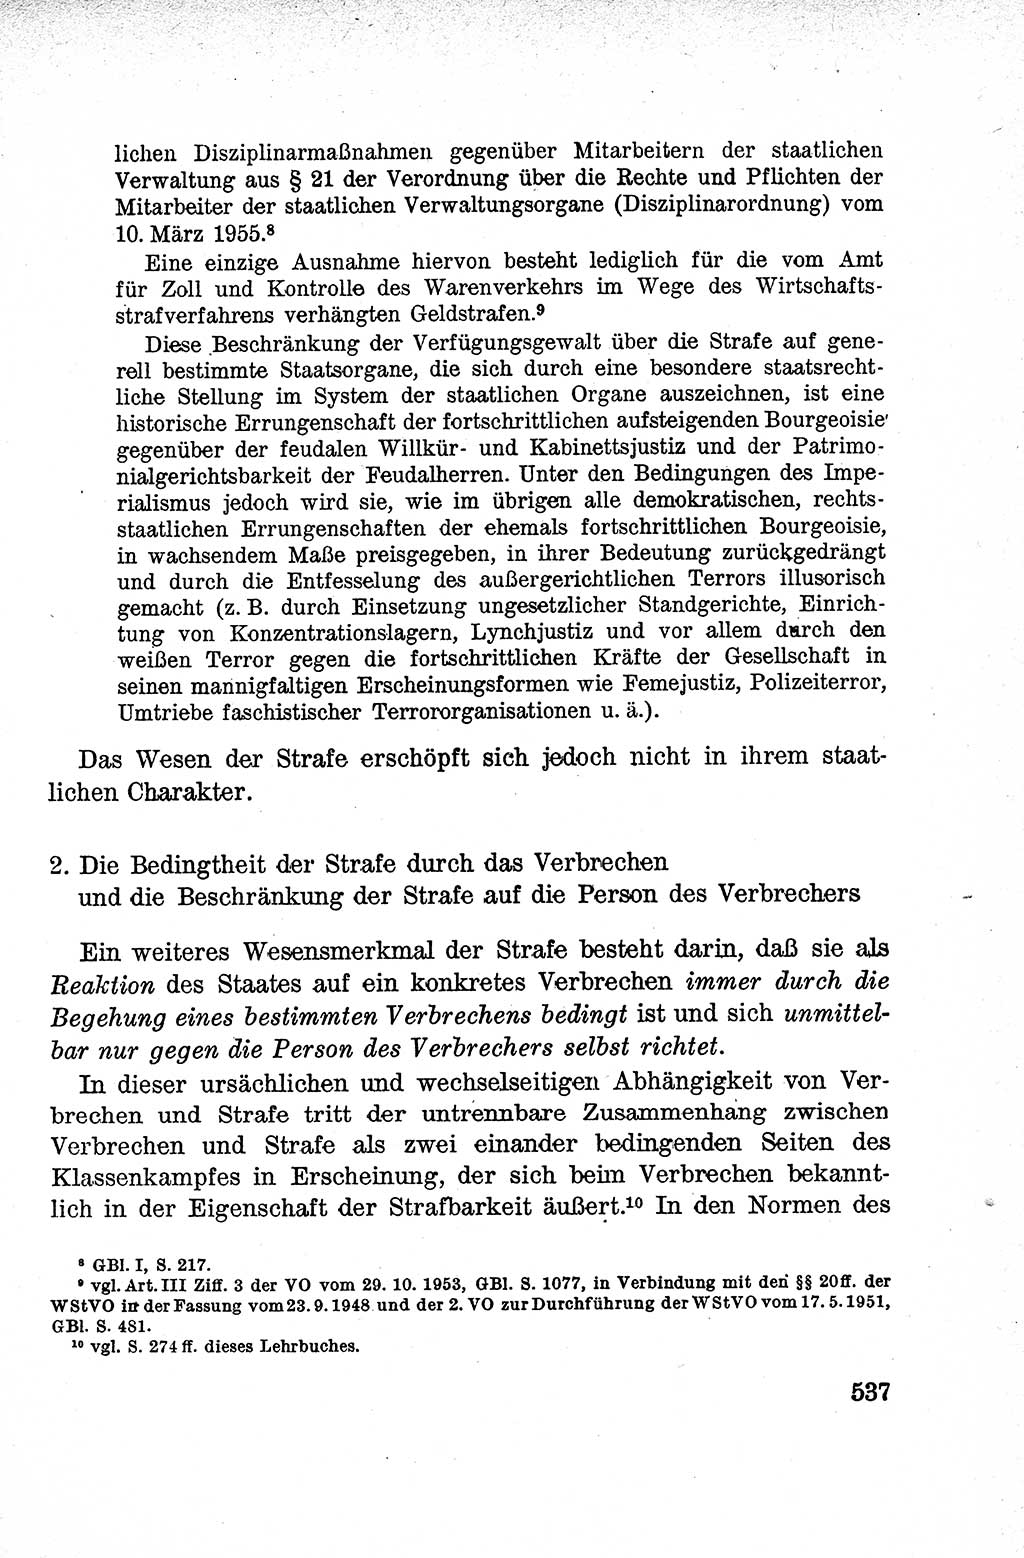 Lehrbuch des Strafrechts der Deutschen Demokratischen Republik (DDR), Allgemeiner Teil 1959, Seite 537 (Lb. Strafr. DDR AT 1959, S. 537)